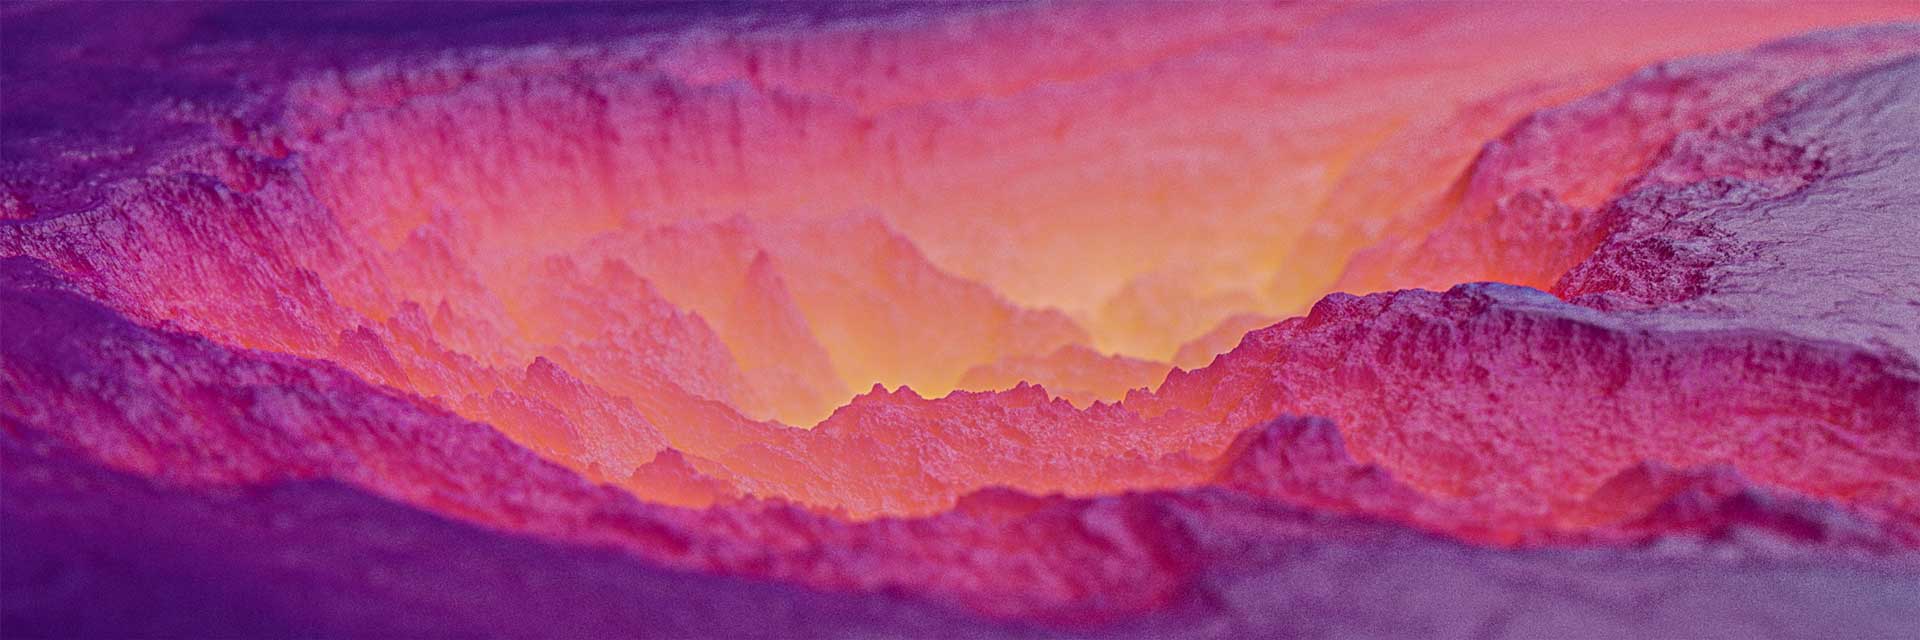 3d blender procedural landscape lava pink